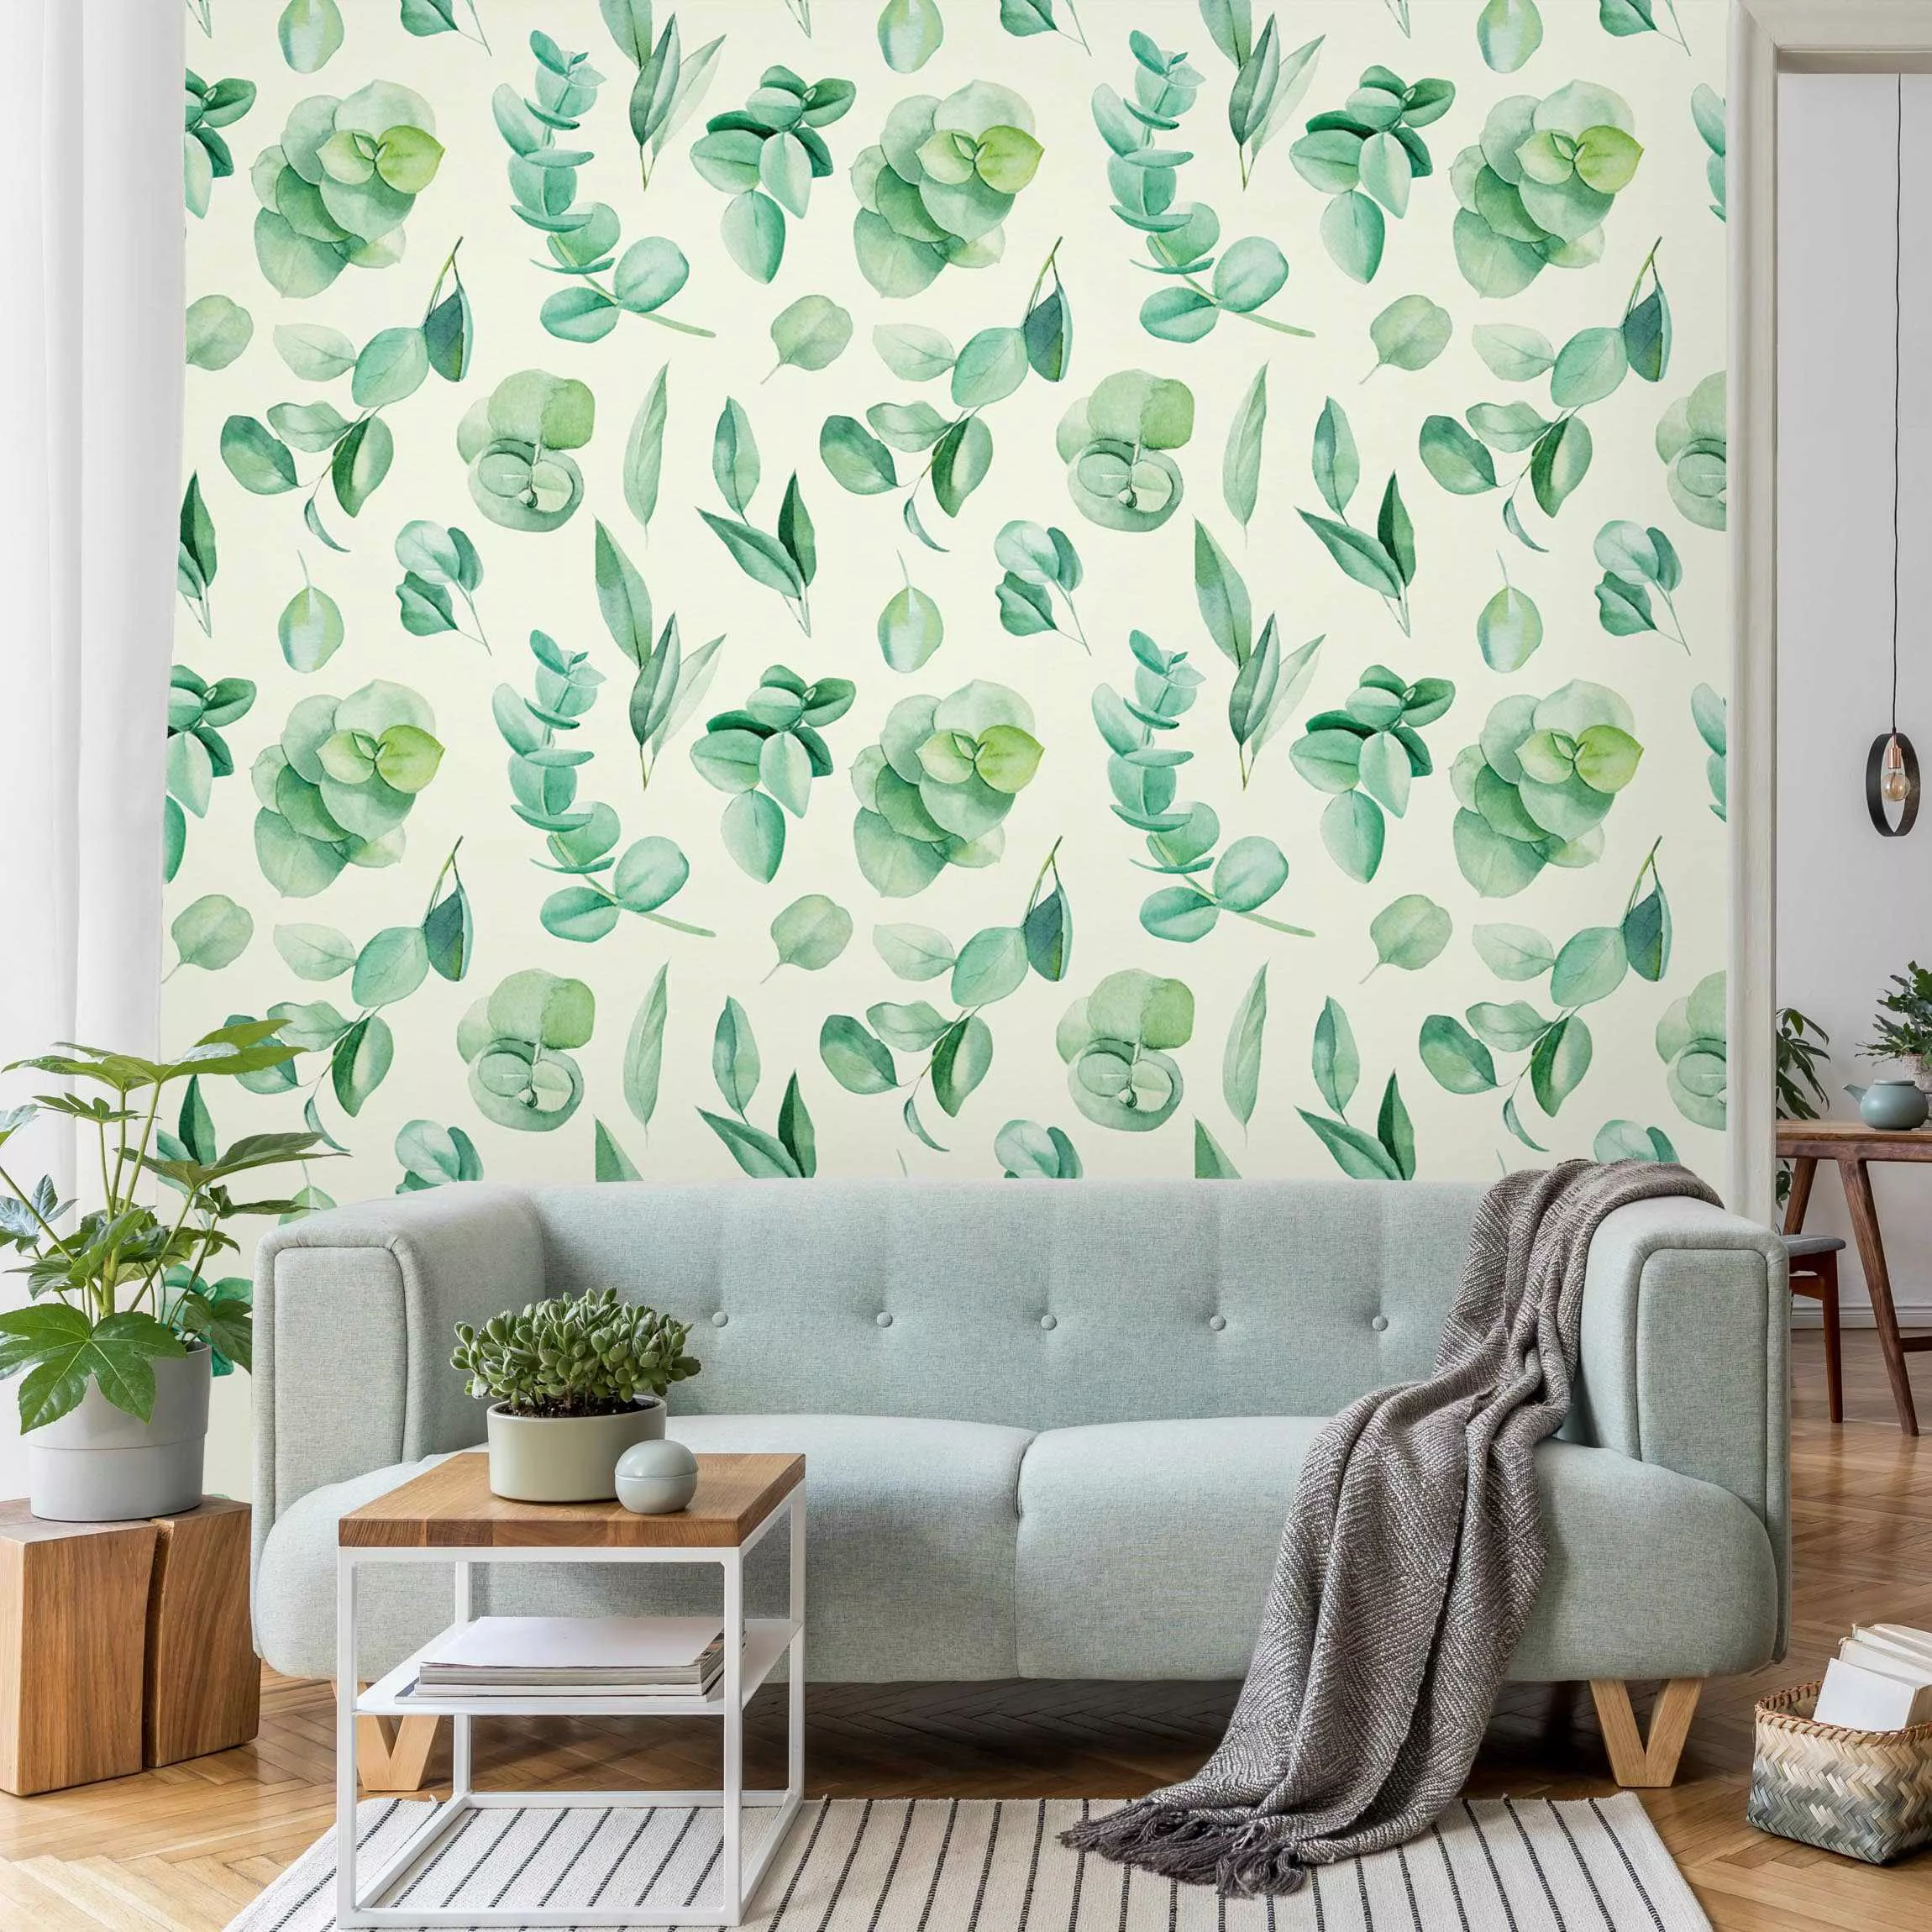 Fototapete Aquarell Eukalyptuszweige und Blätter Muster günstig online kaufen